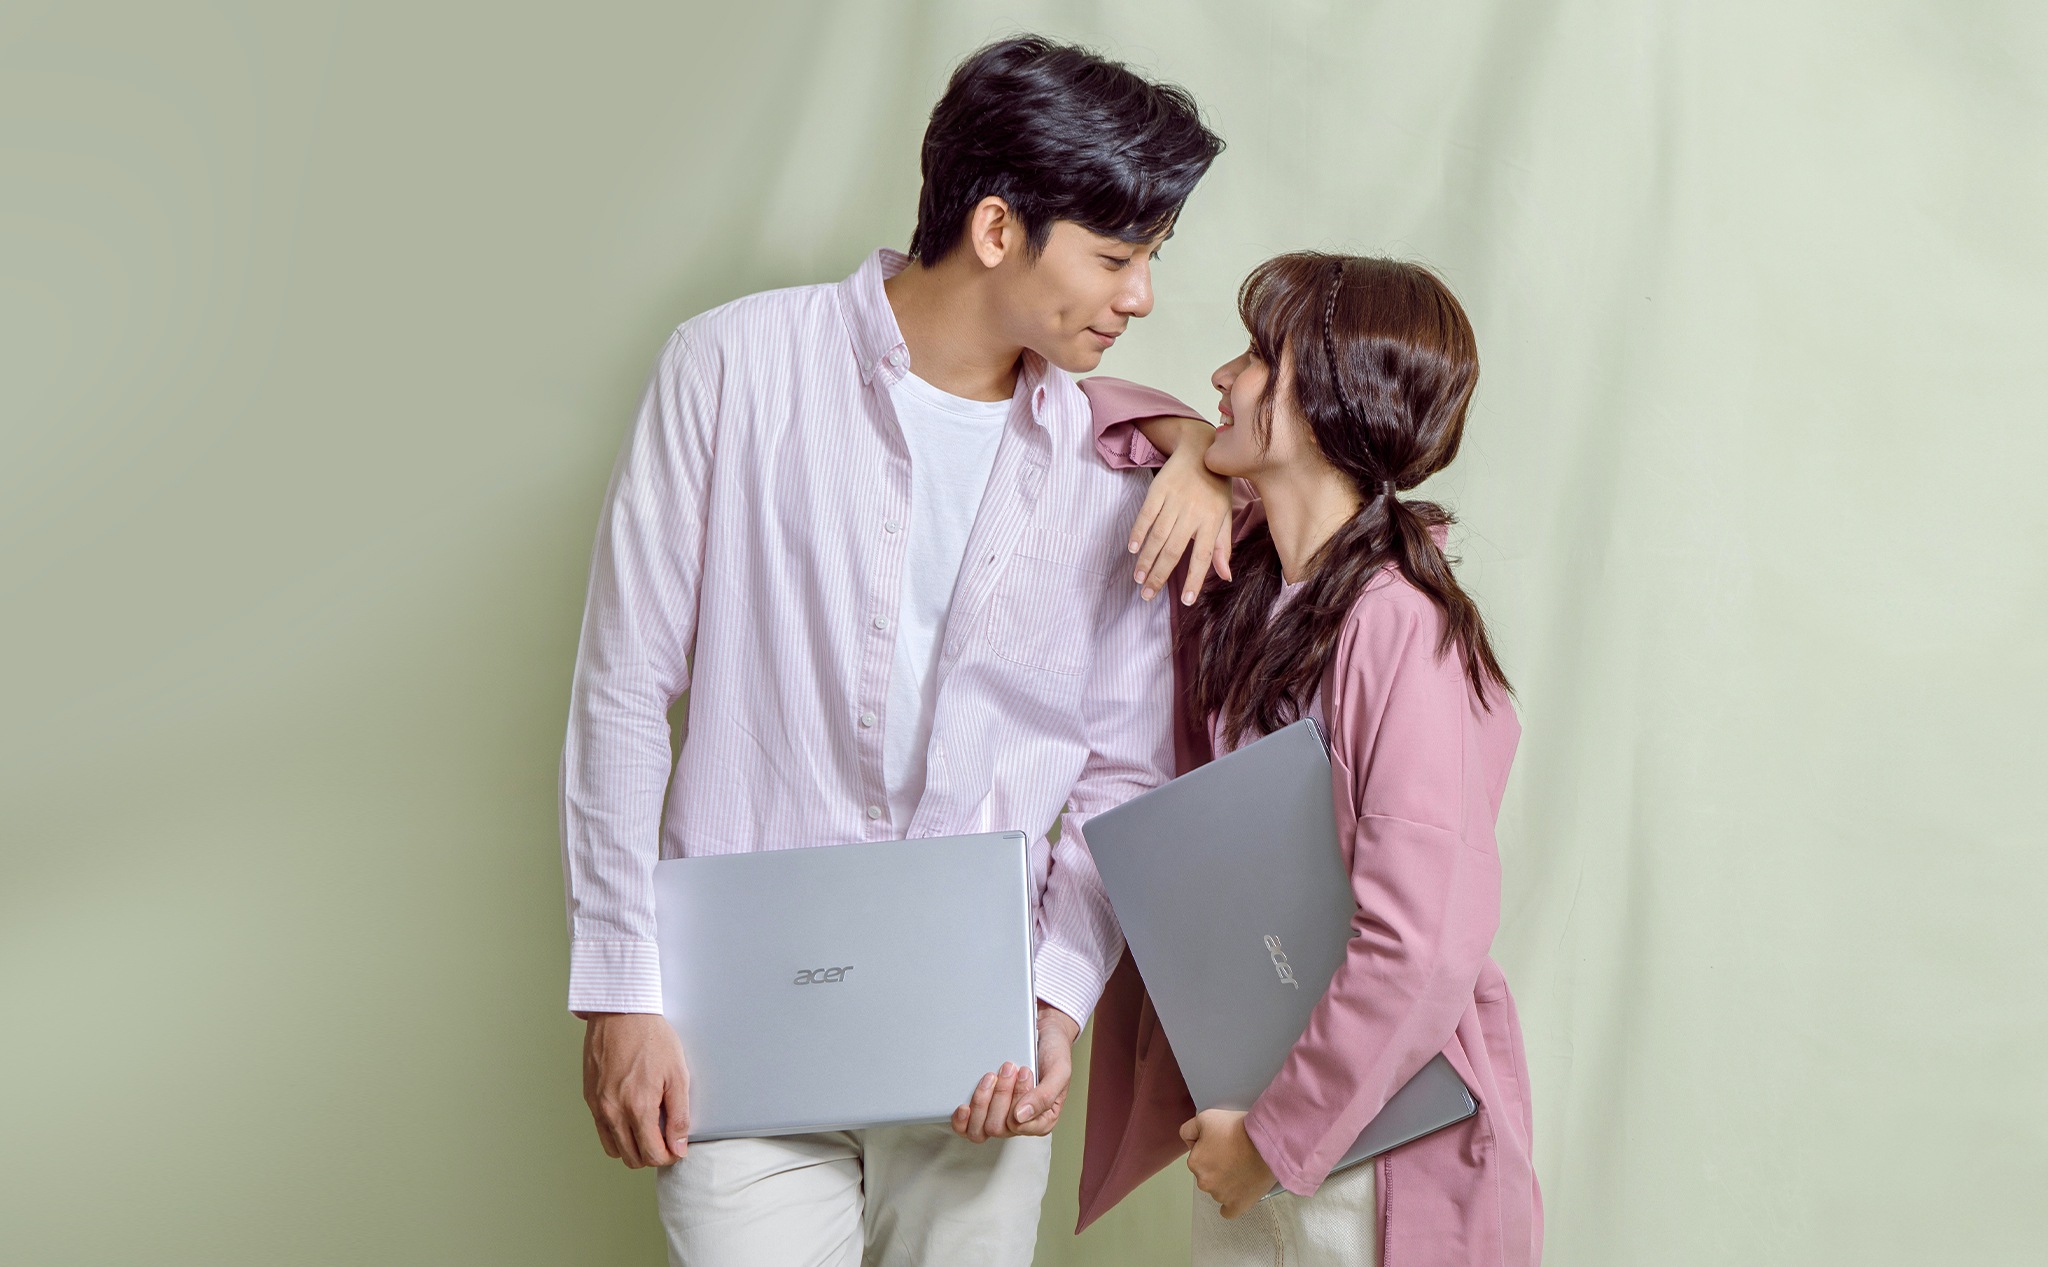 [QC] Chọn laptop văn phòng, tham khảo ngay 3 mẫu máy vô cùng đáng mua tới từ Acer